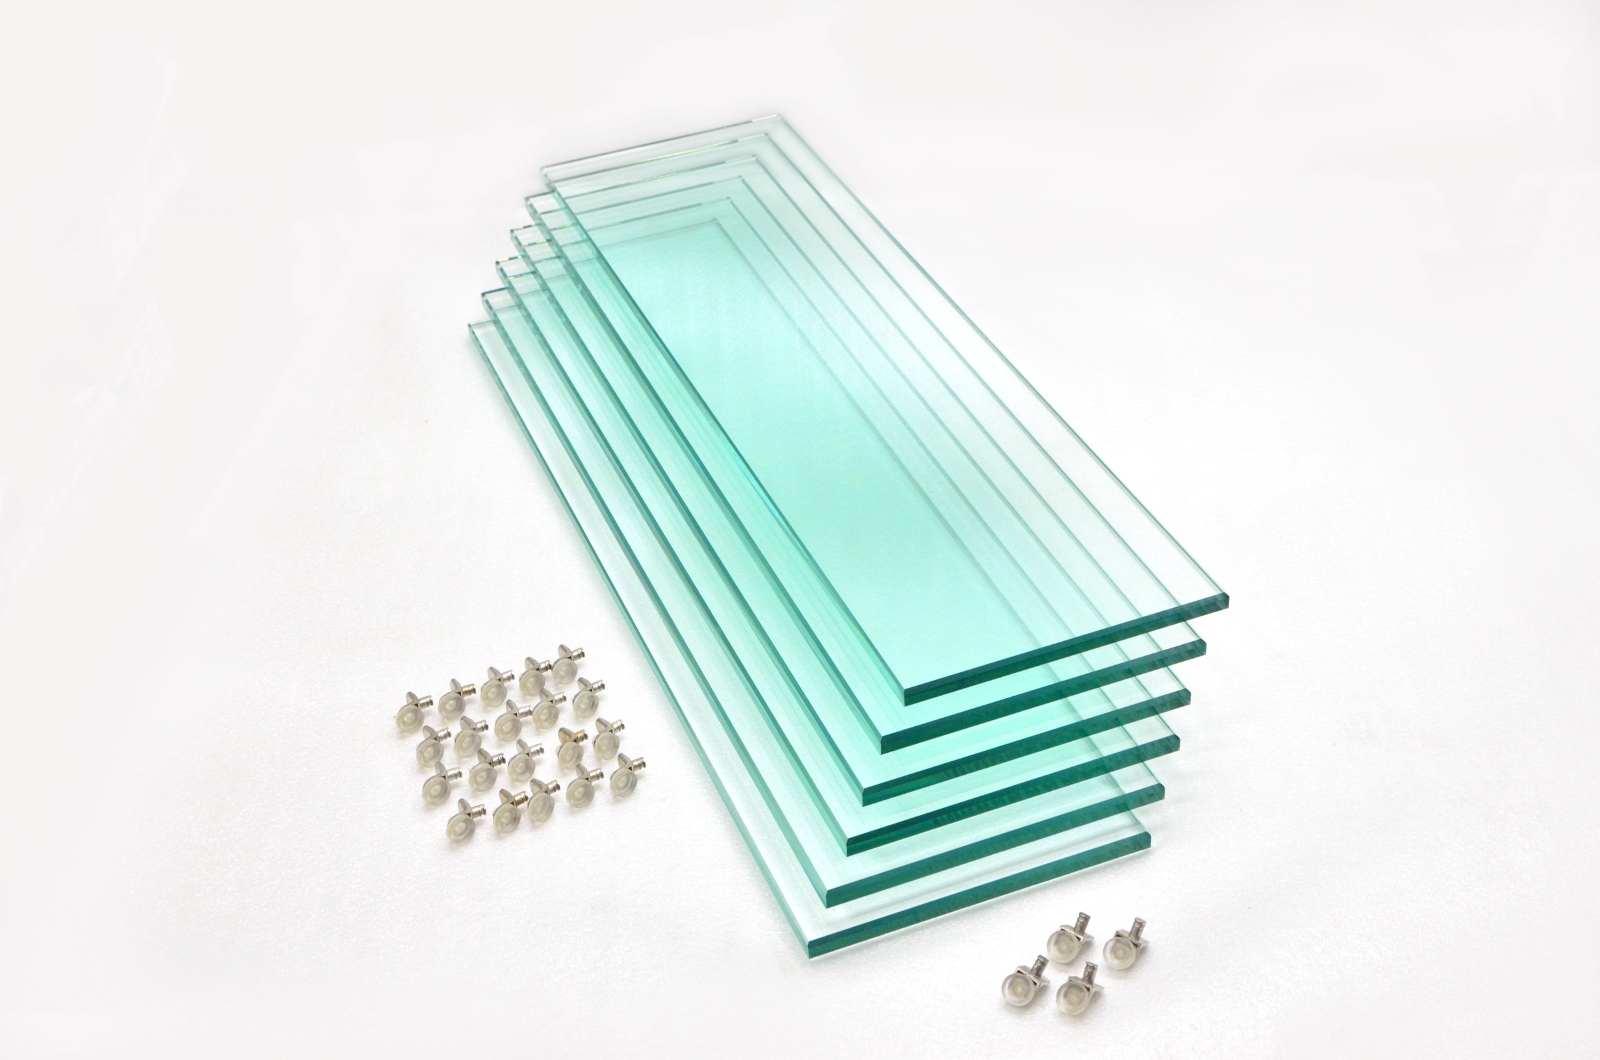 Комплект стеклянных полок для Altum 700/Crystal 800 (6 шт.)